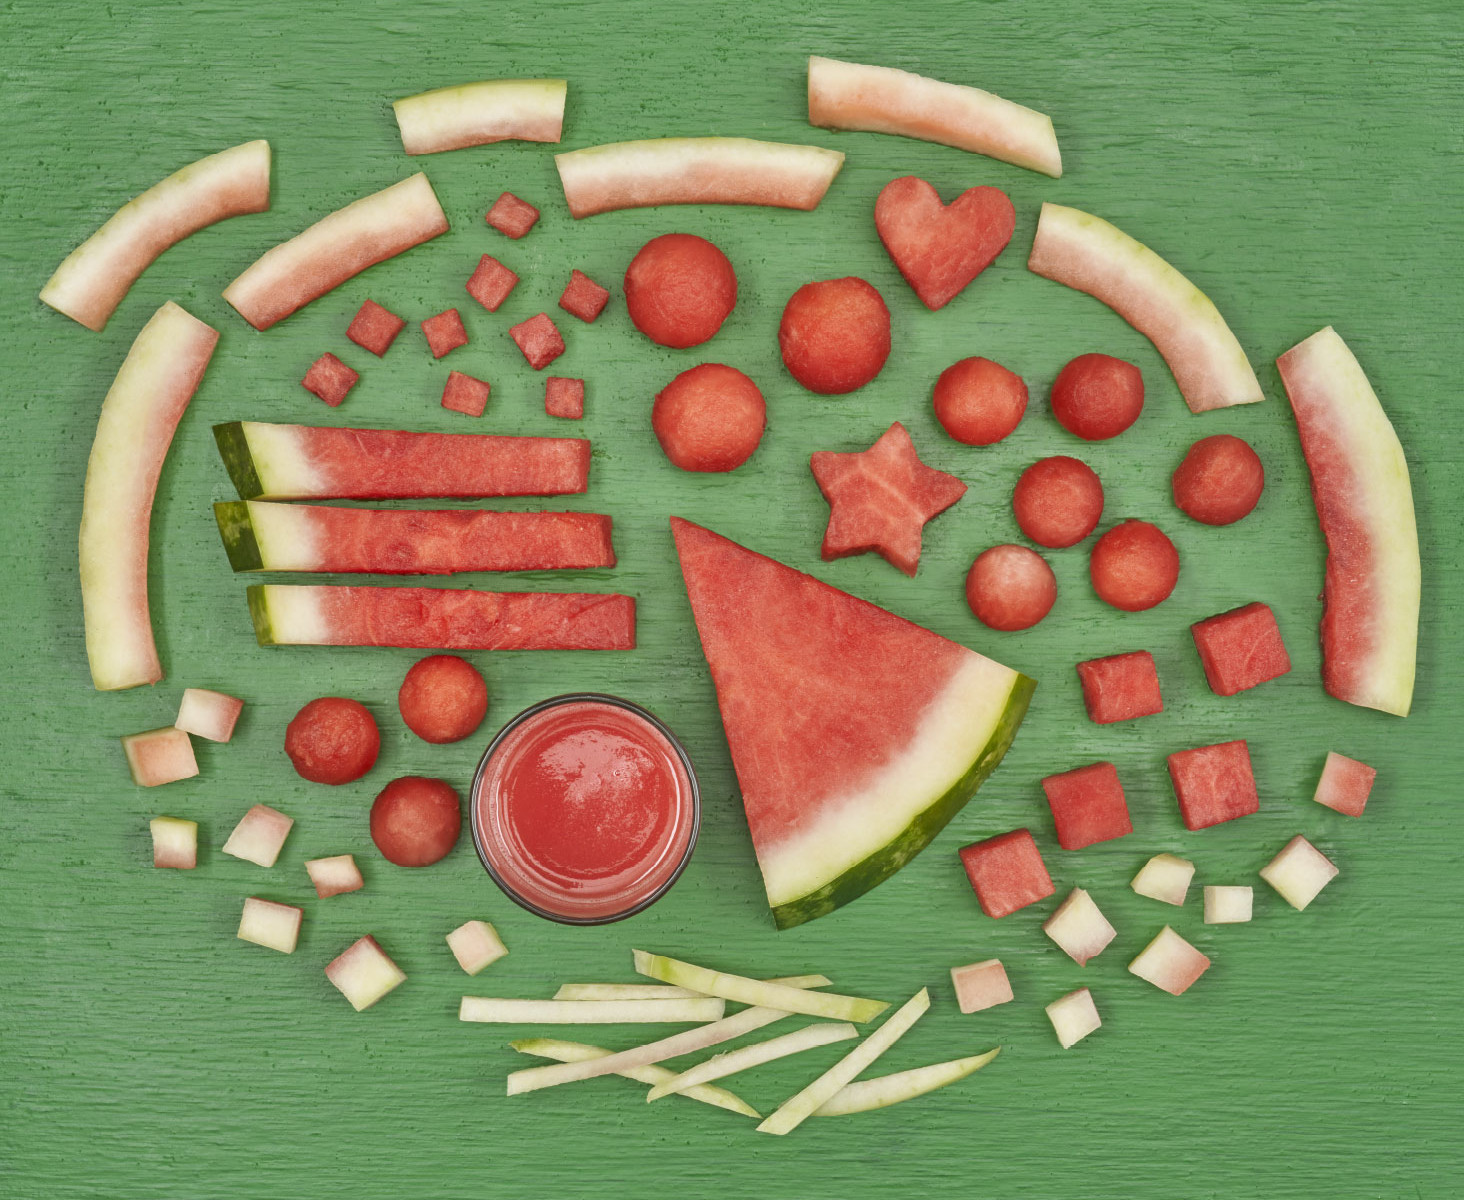 Watermelon cut butchery-style on a green board